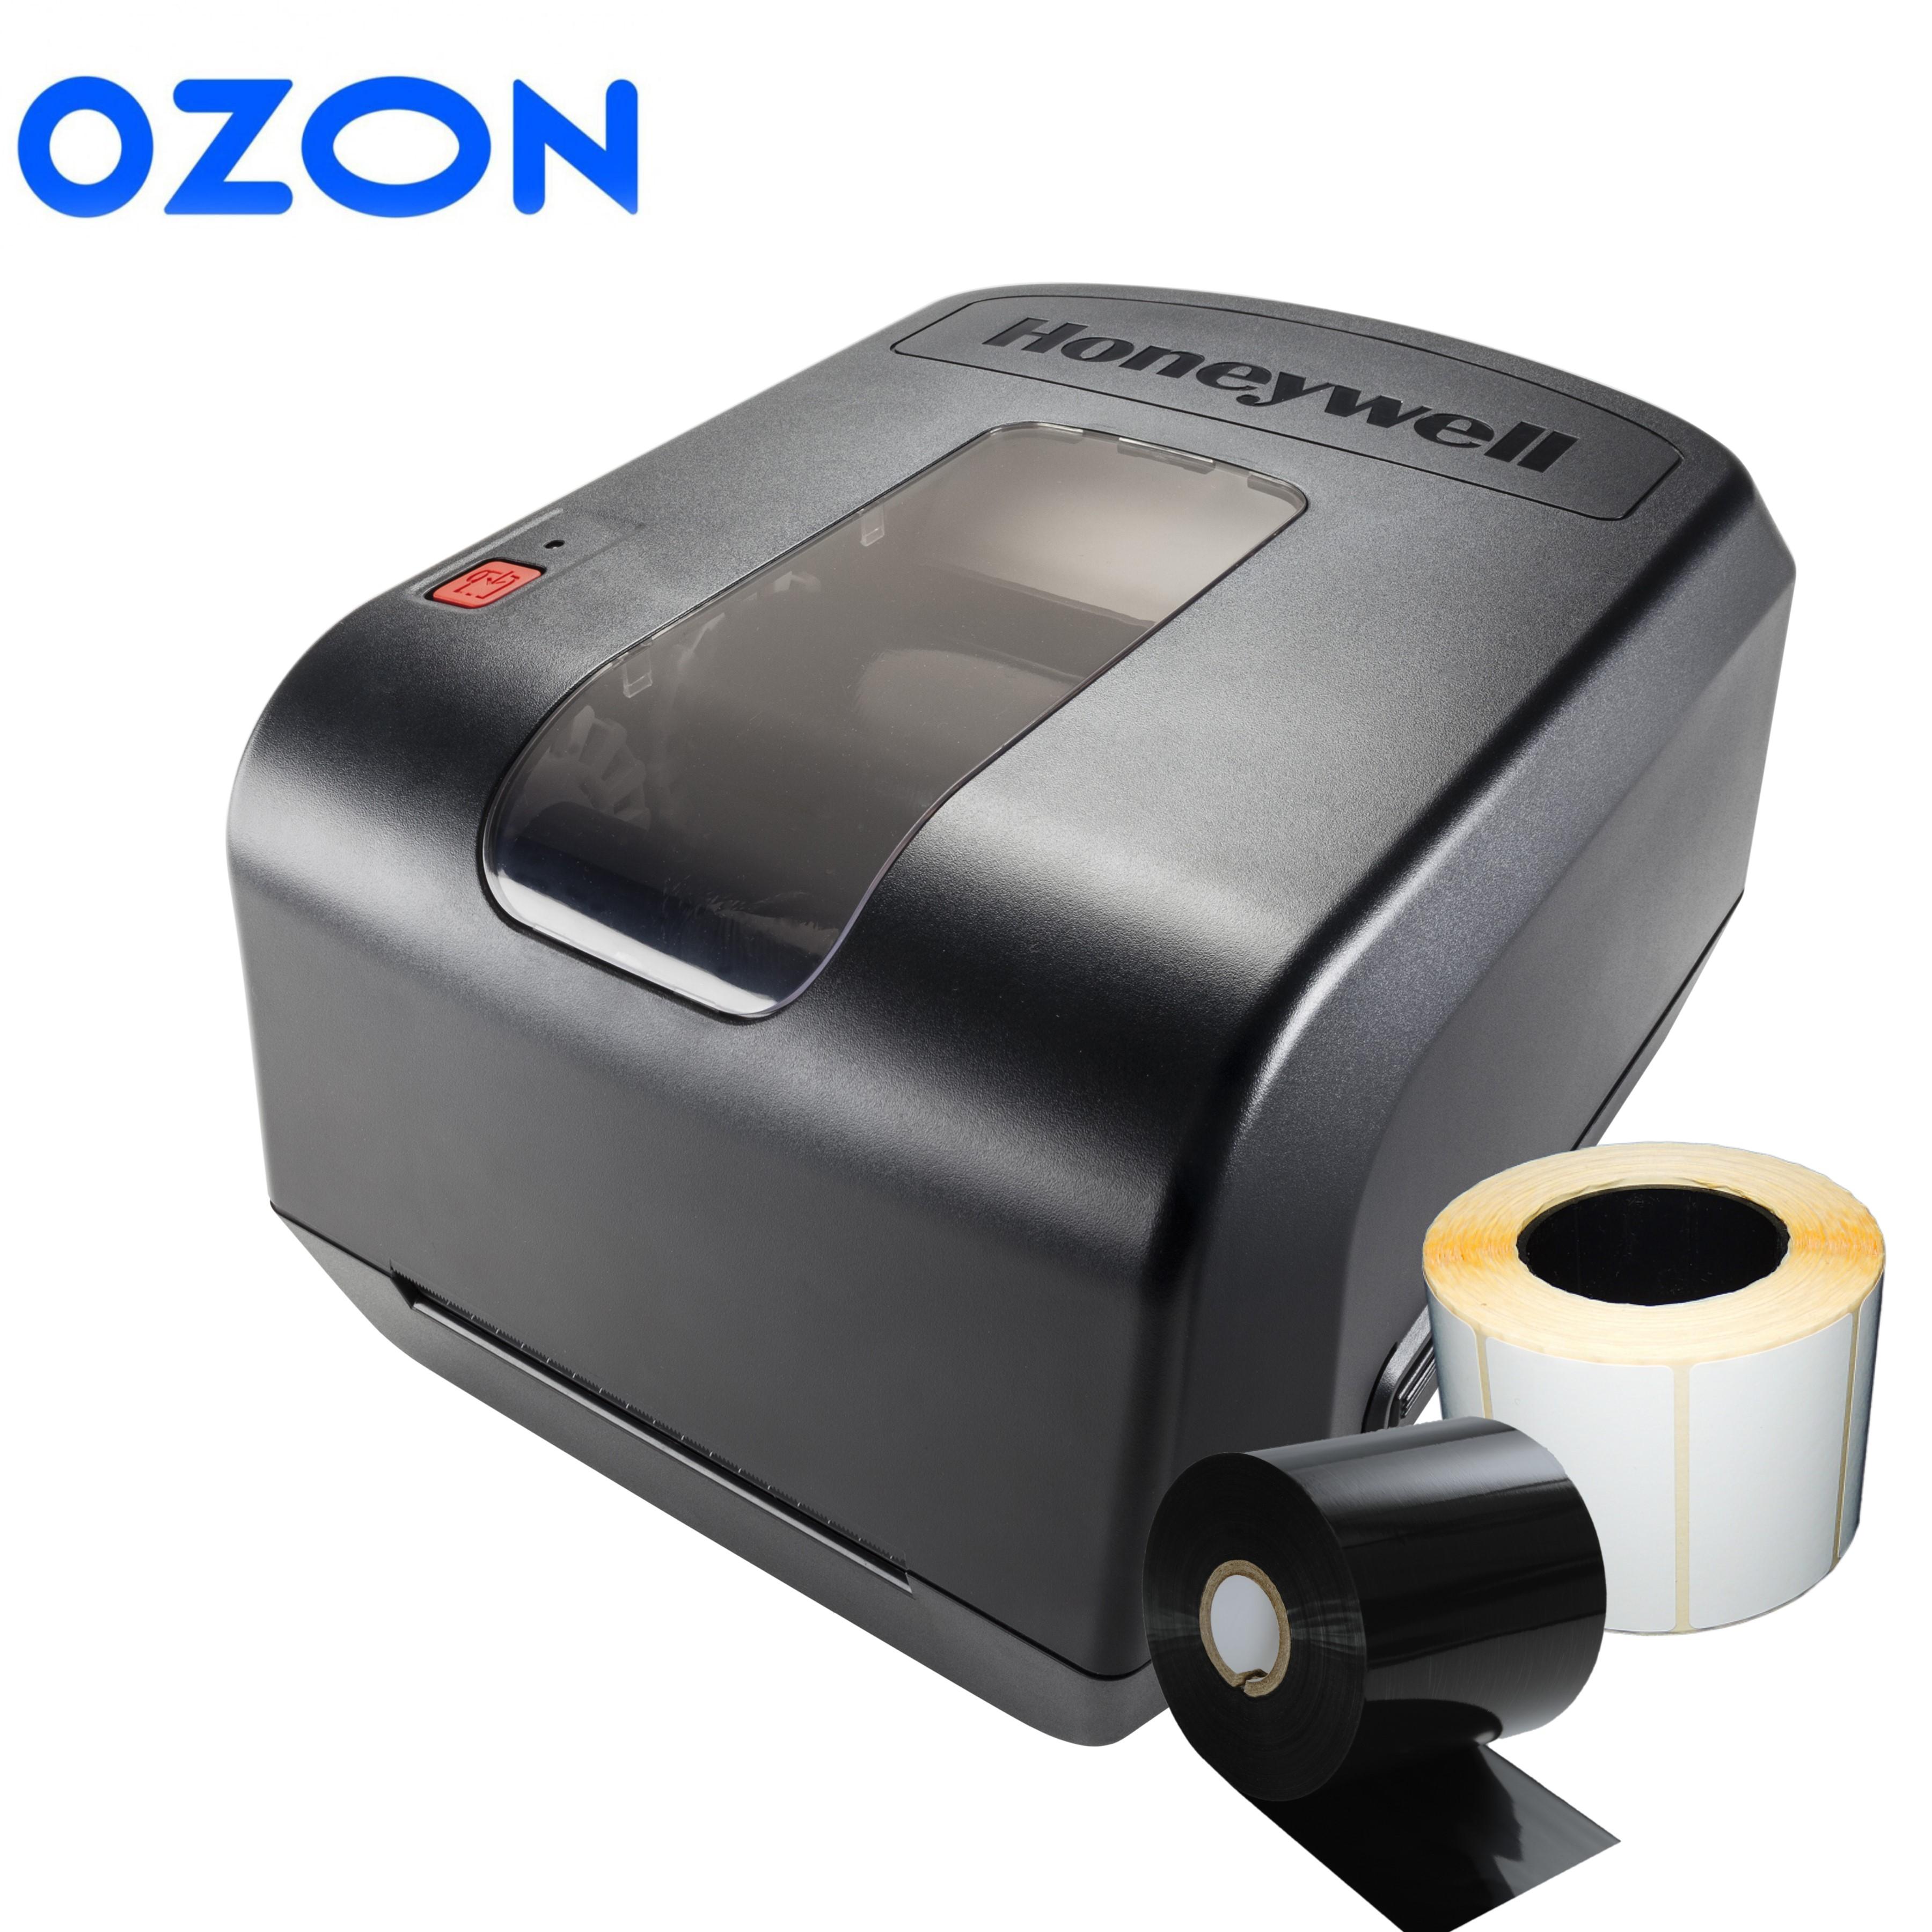  Термотрансферный принтер Honeywell PC42t Plus (комплект для ОЗОН) + этикетки 300 штук + 1 риббон